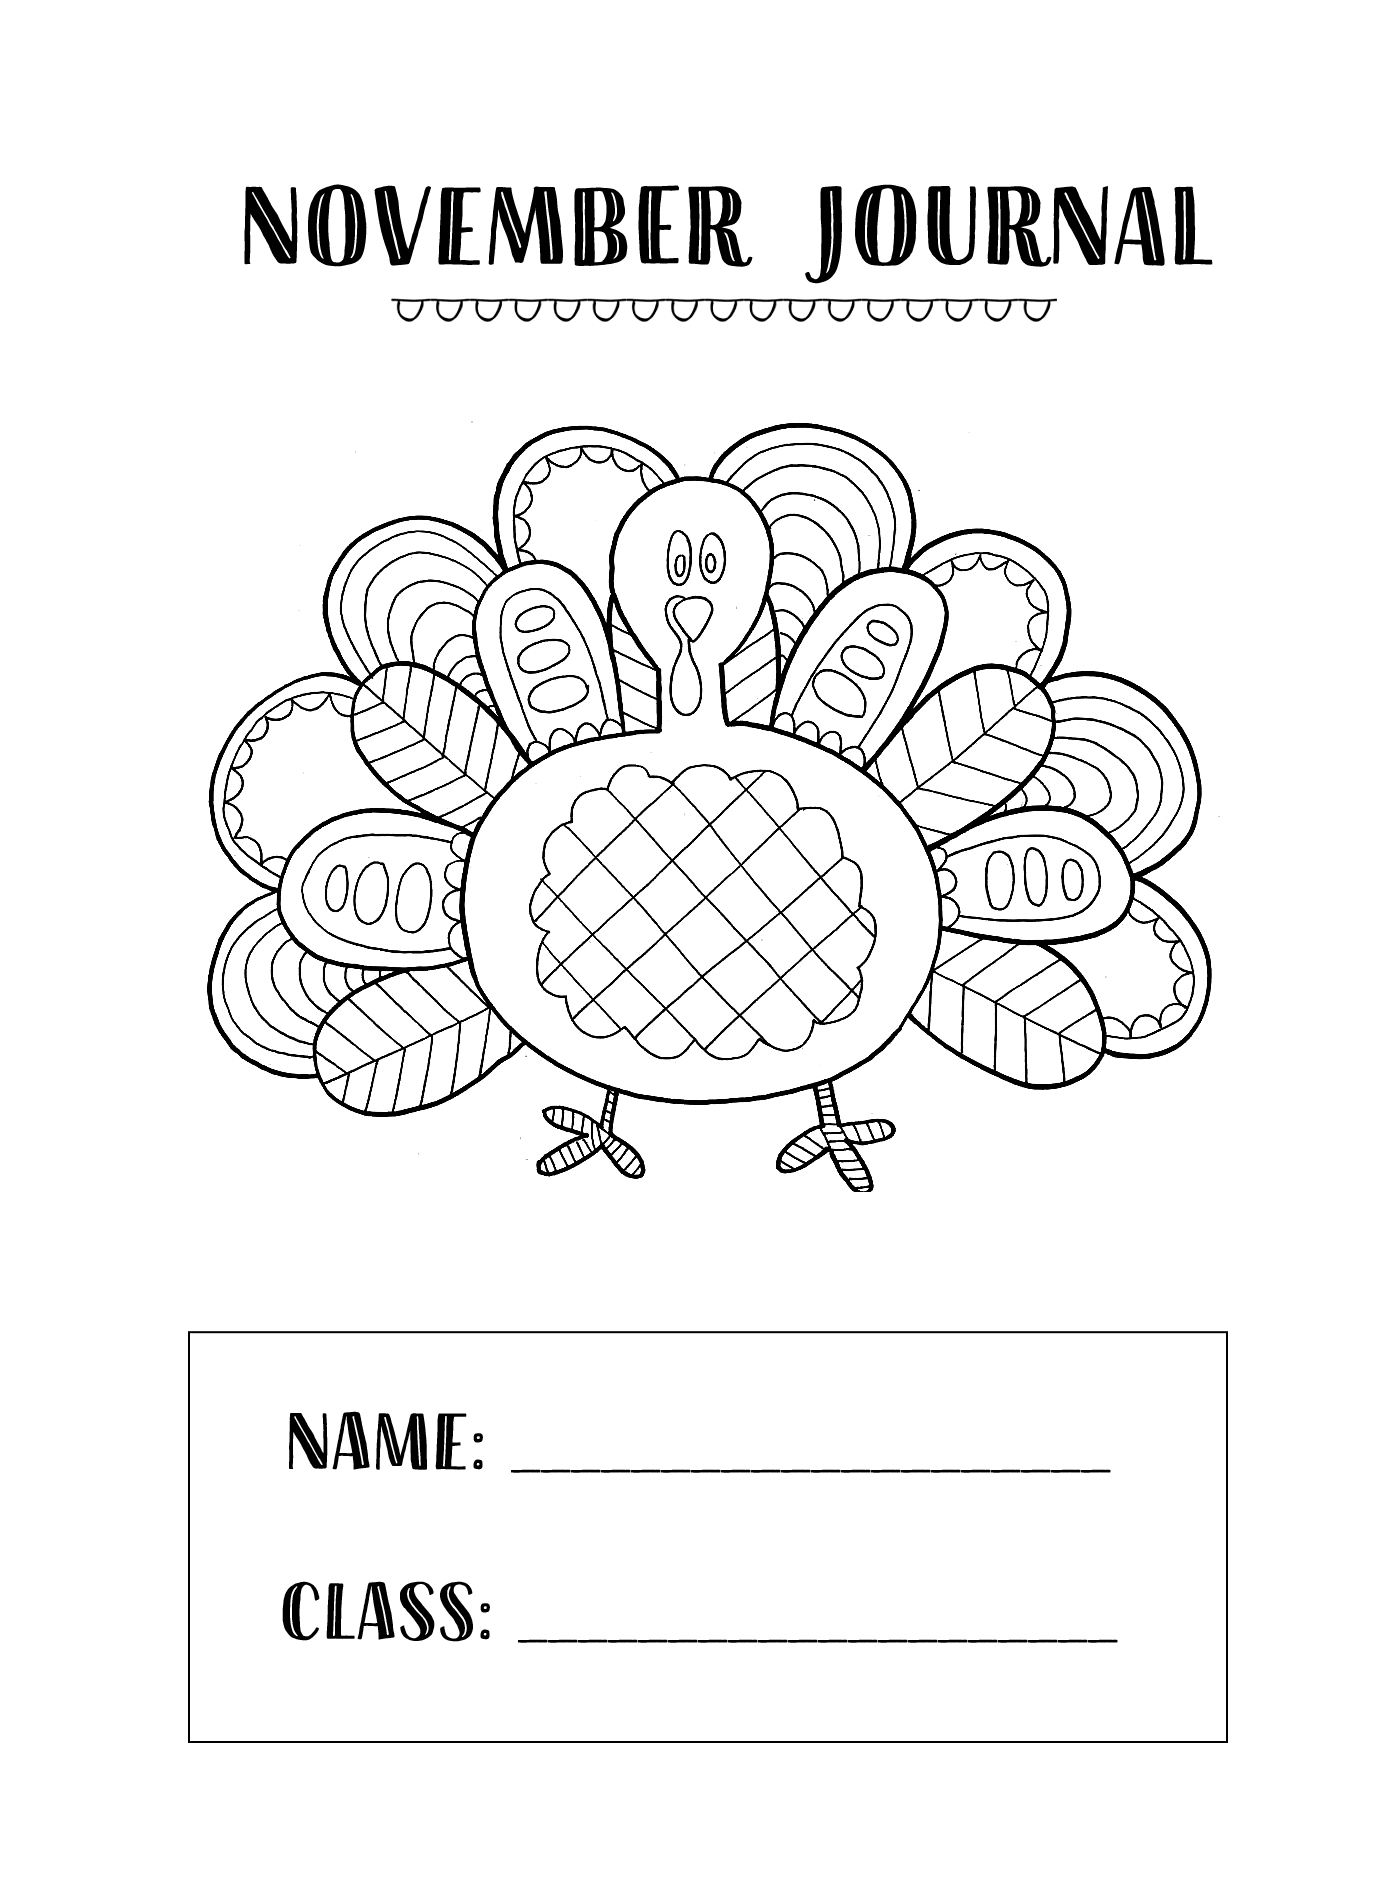 November Journal Cover Worksheet Printable